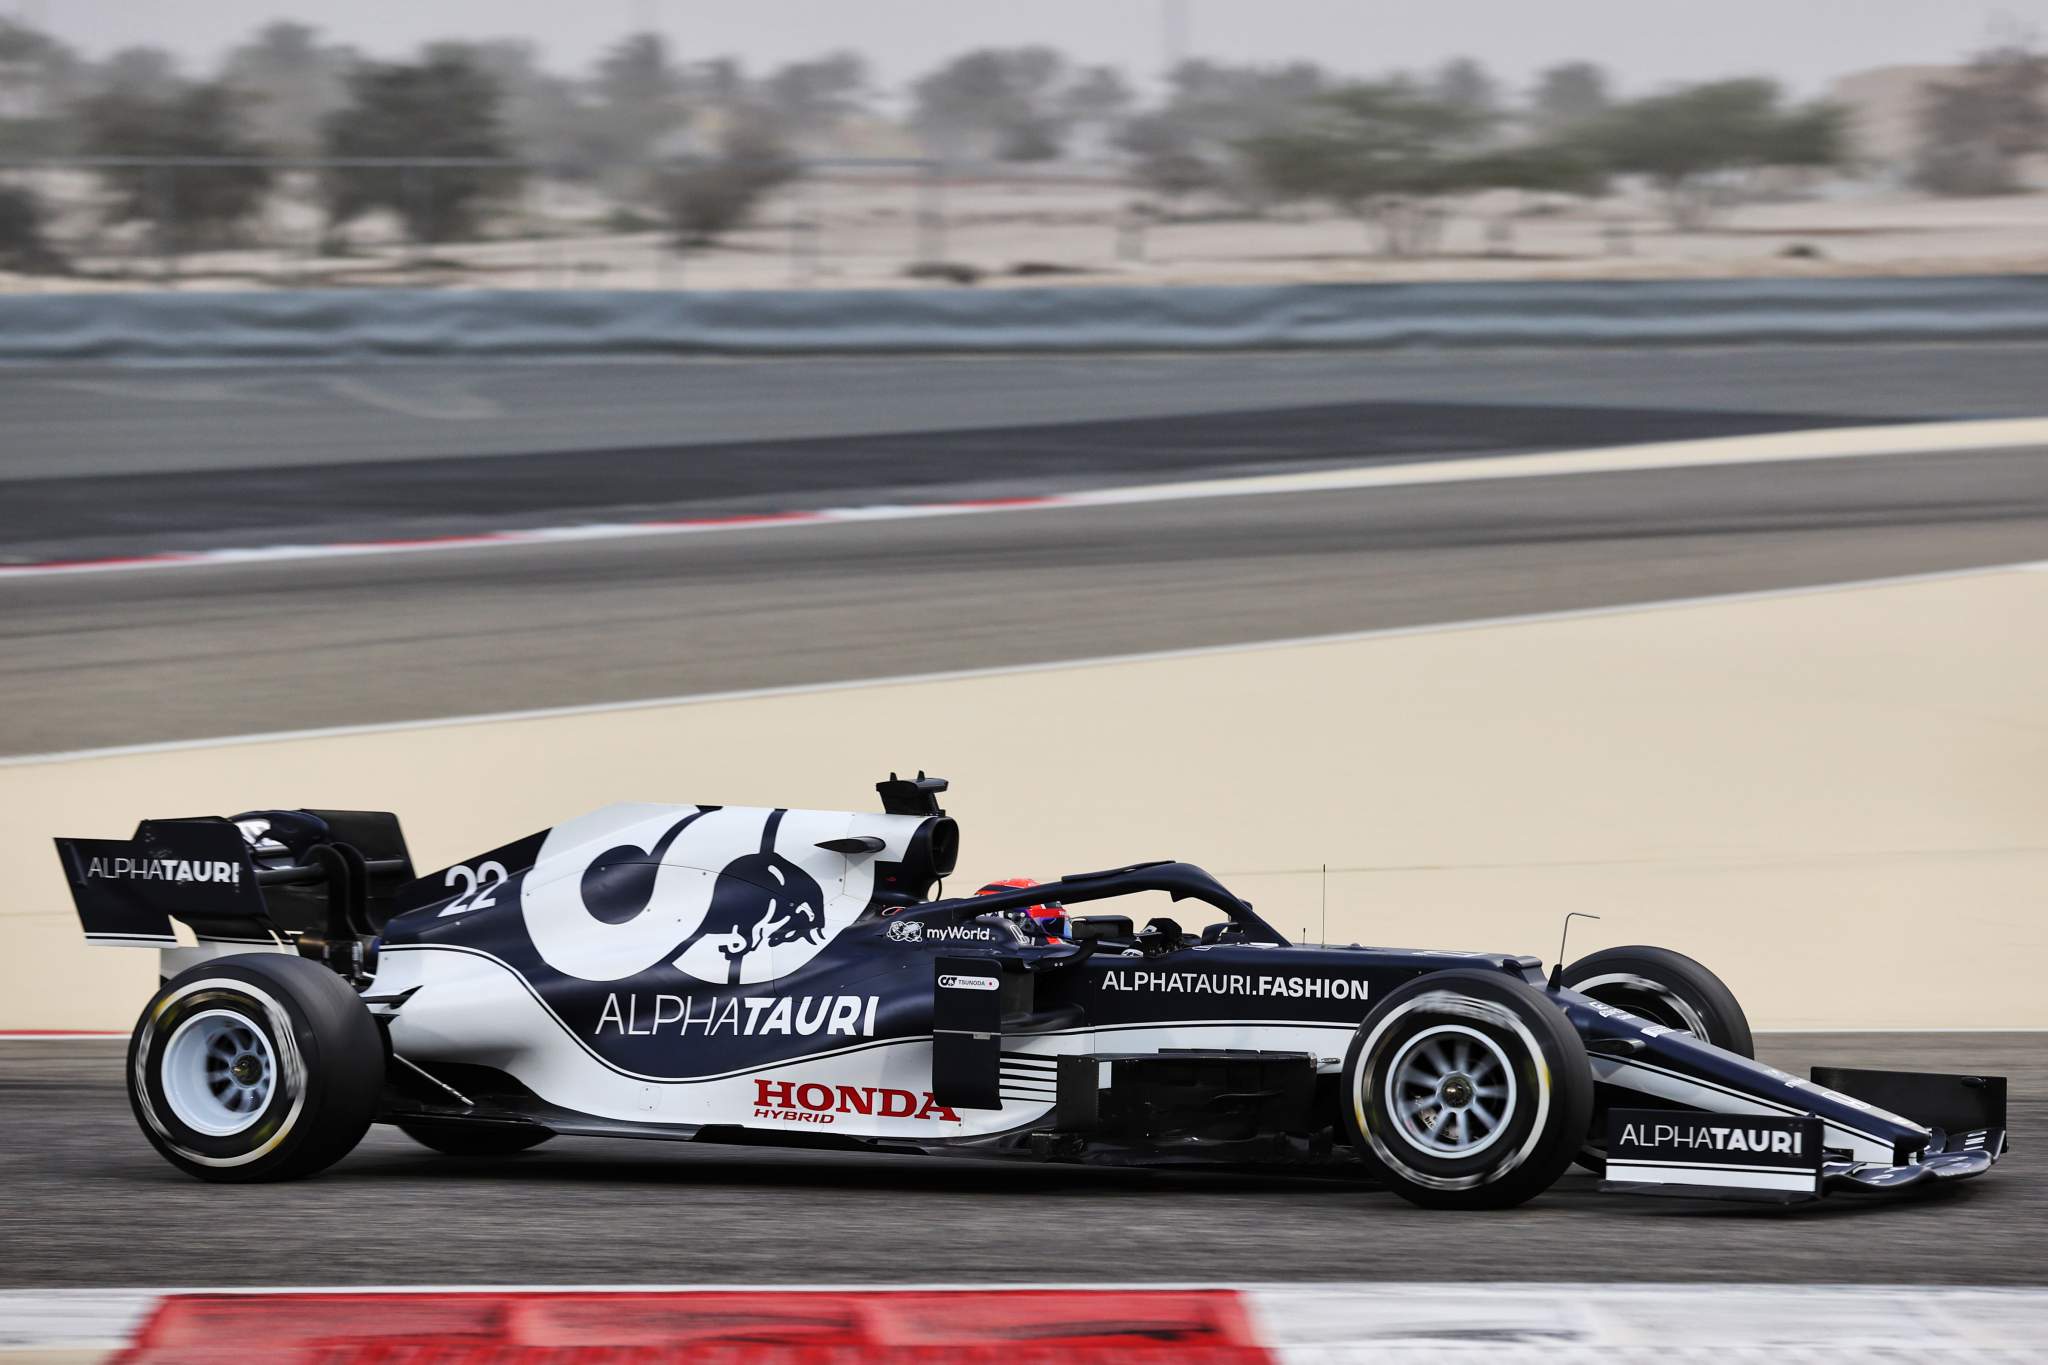 Motor Racing Formula One Testing Day One Sakhir, Bahrain